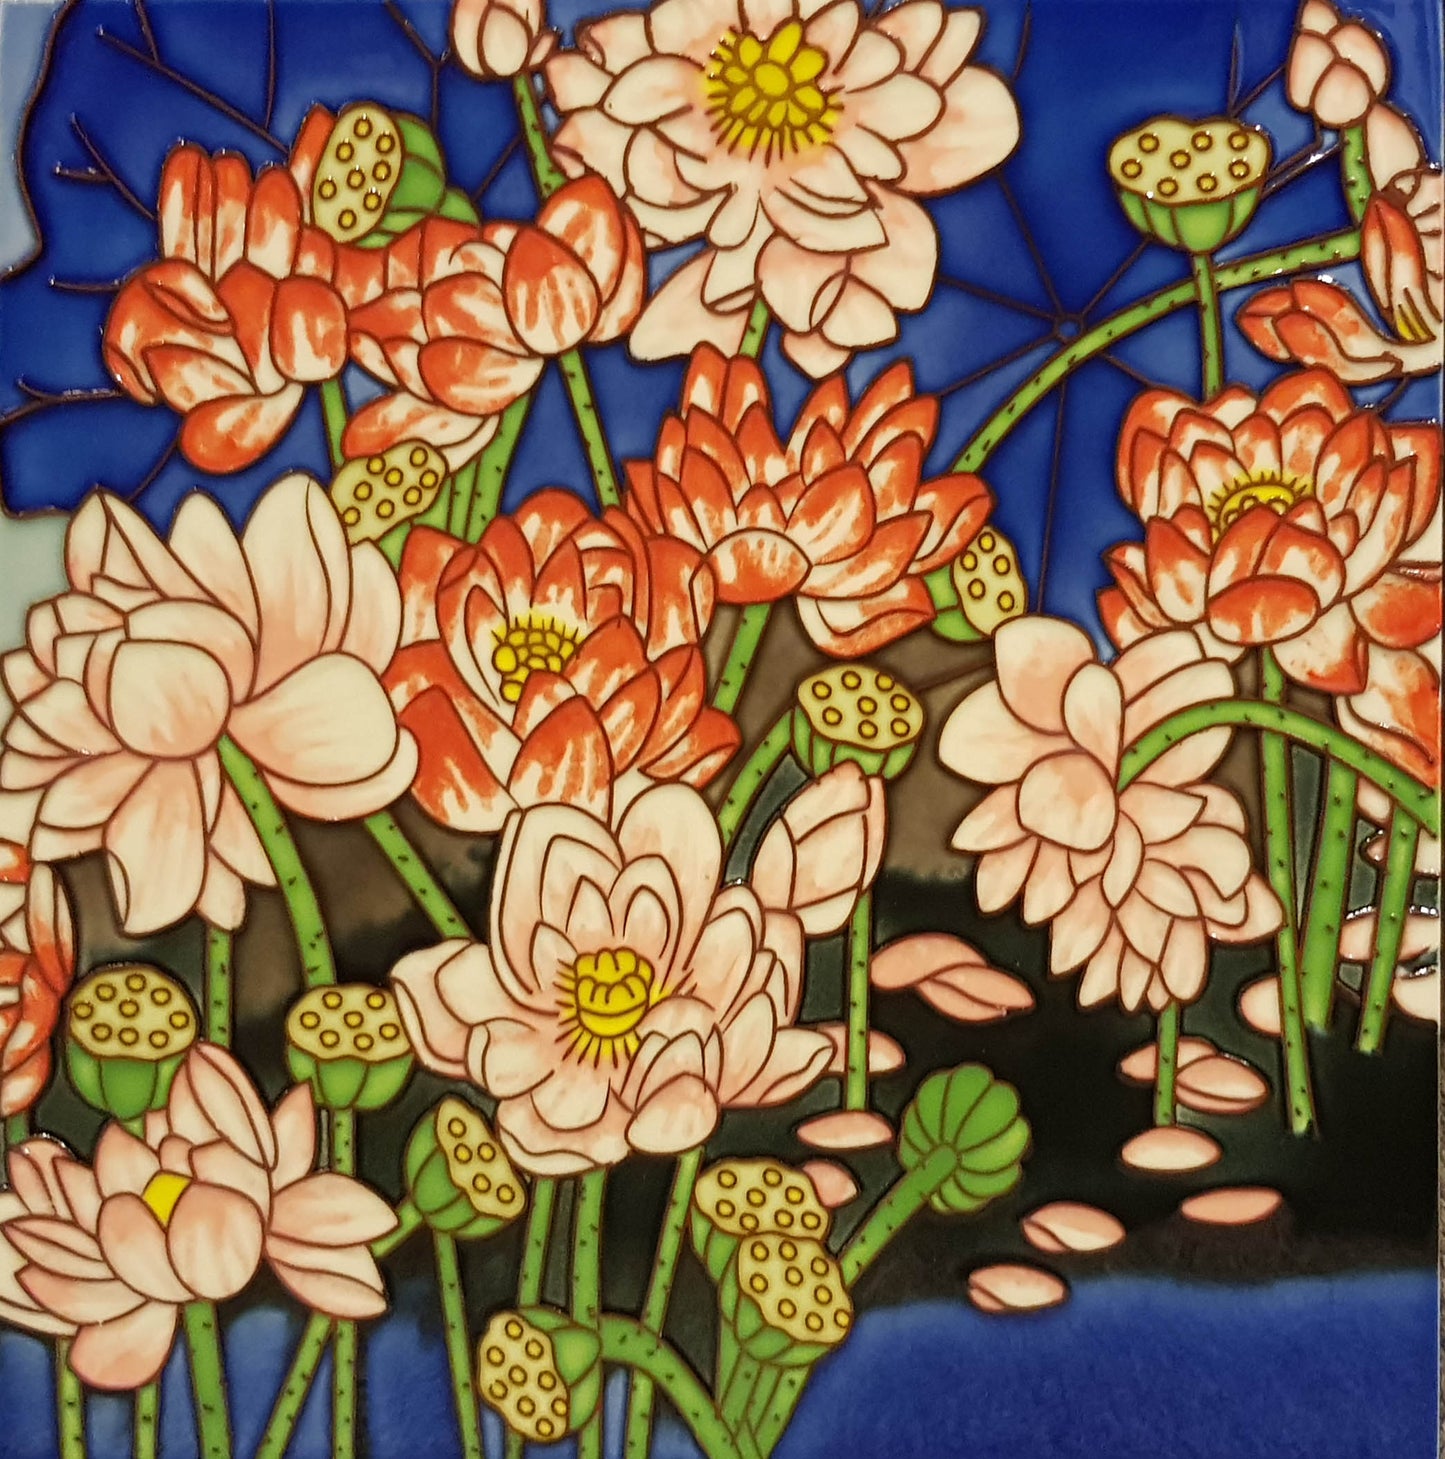 3536 Lotus Pond with Colored Lotus 30cm x 30cm Pureland Ceramic Tile